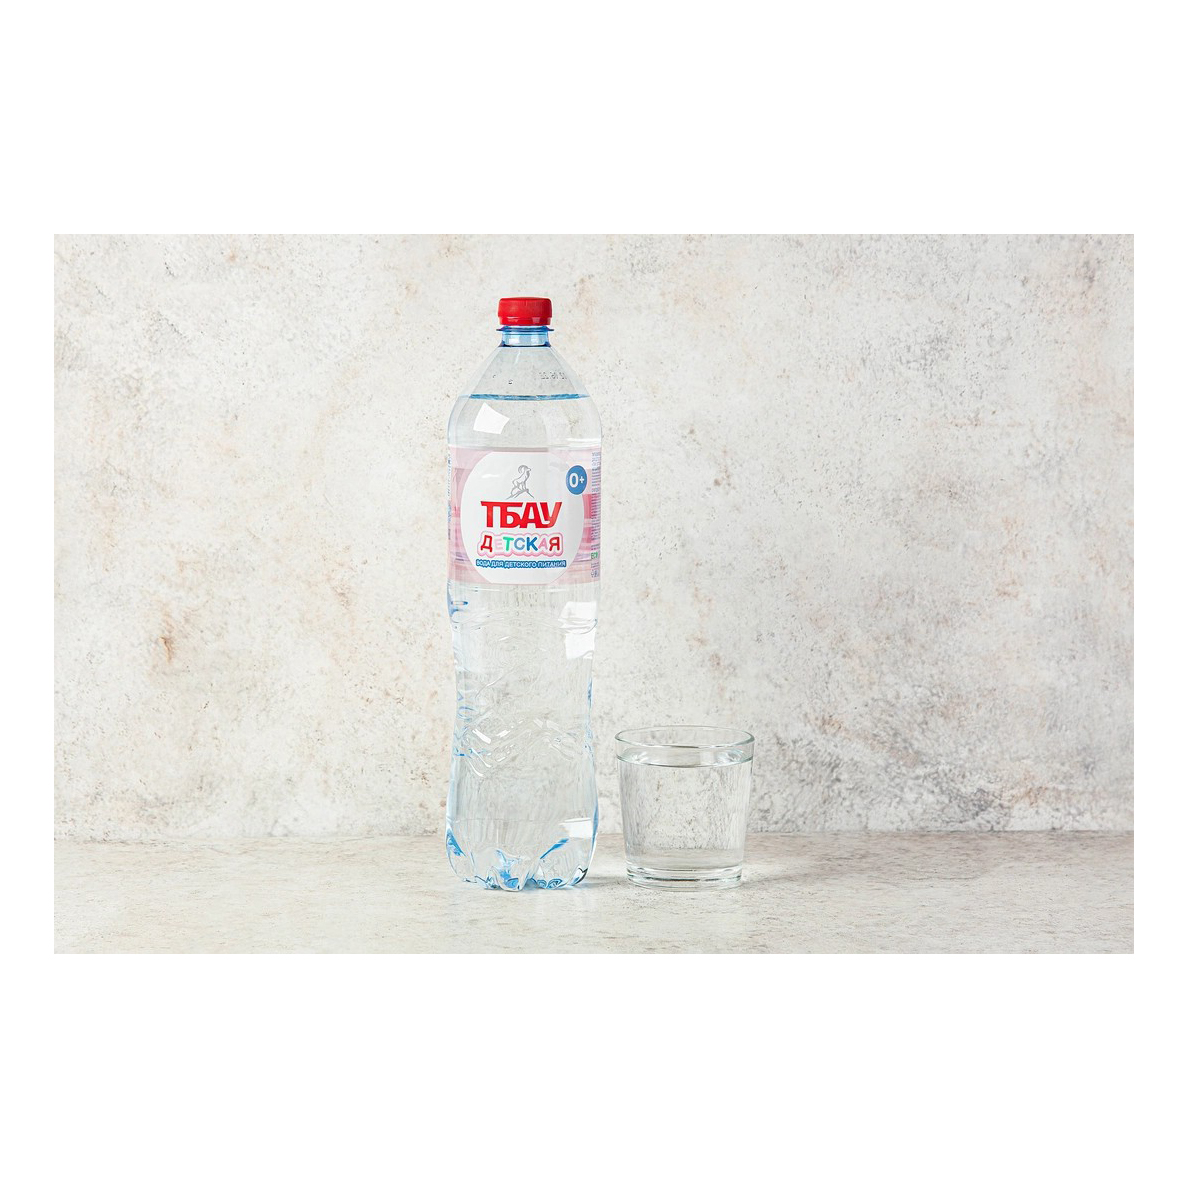 Вода питьевая детская Тбау негазированная с рождения 1,5 л legend of baikal вода питьевая негазированная 0 5 л 9 шт стекло